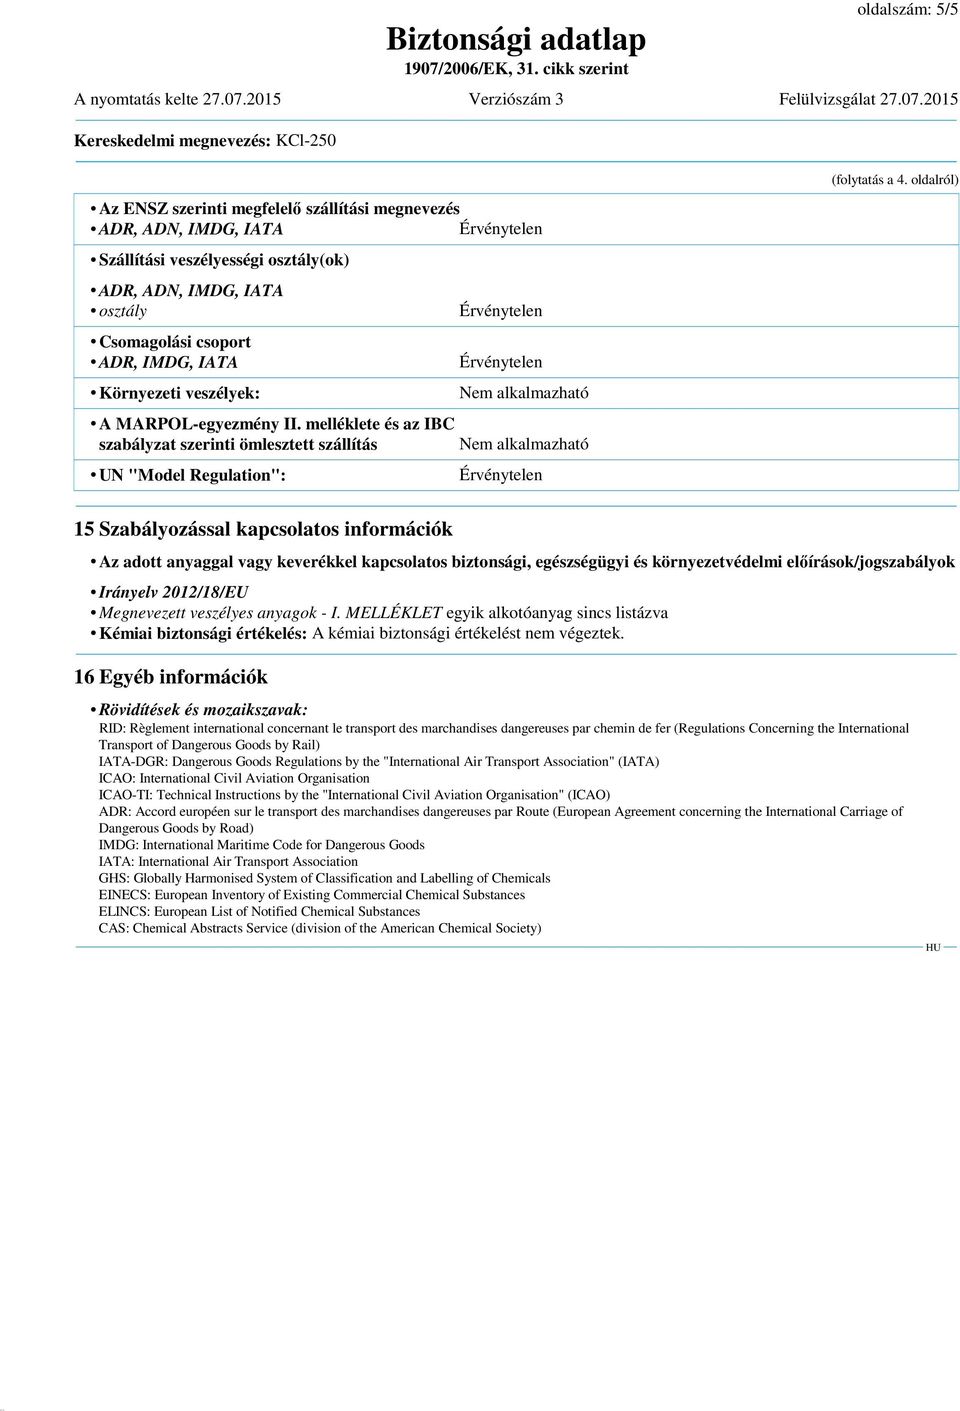 oldalról) 15 Szabályozással kapcsolatos információk Az adott anyaggal vagy keverékkel kapcsolatos biztonsági, egészségügyi és környezetvédelmi előírások/jogszabályok Irányelv 2012/18/EU Megnevezett